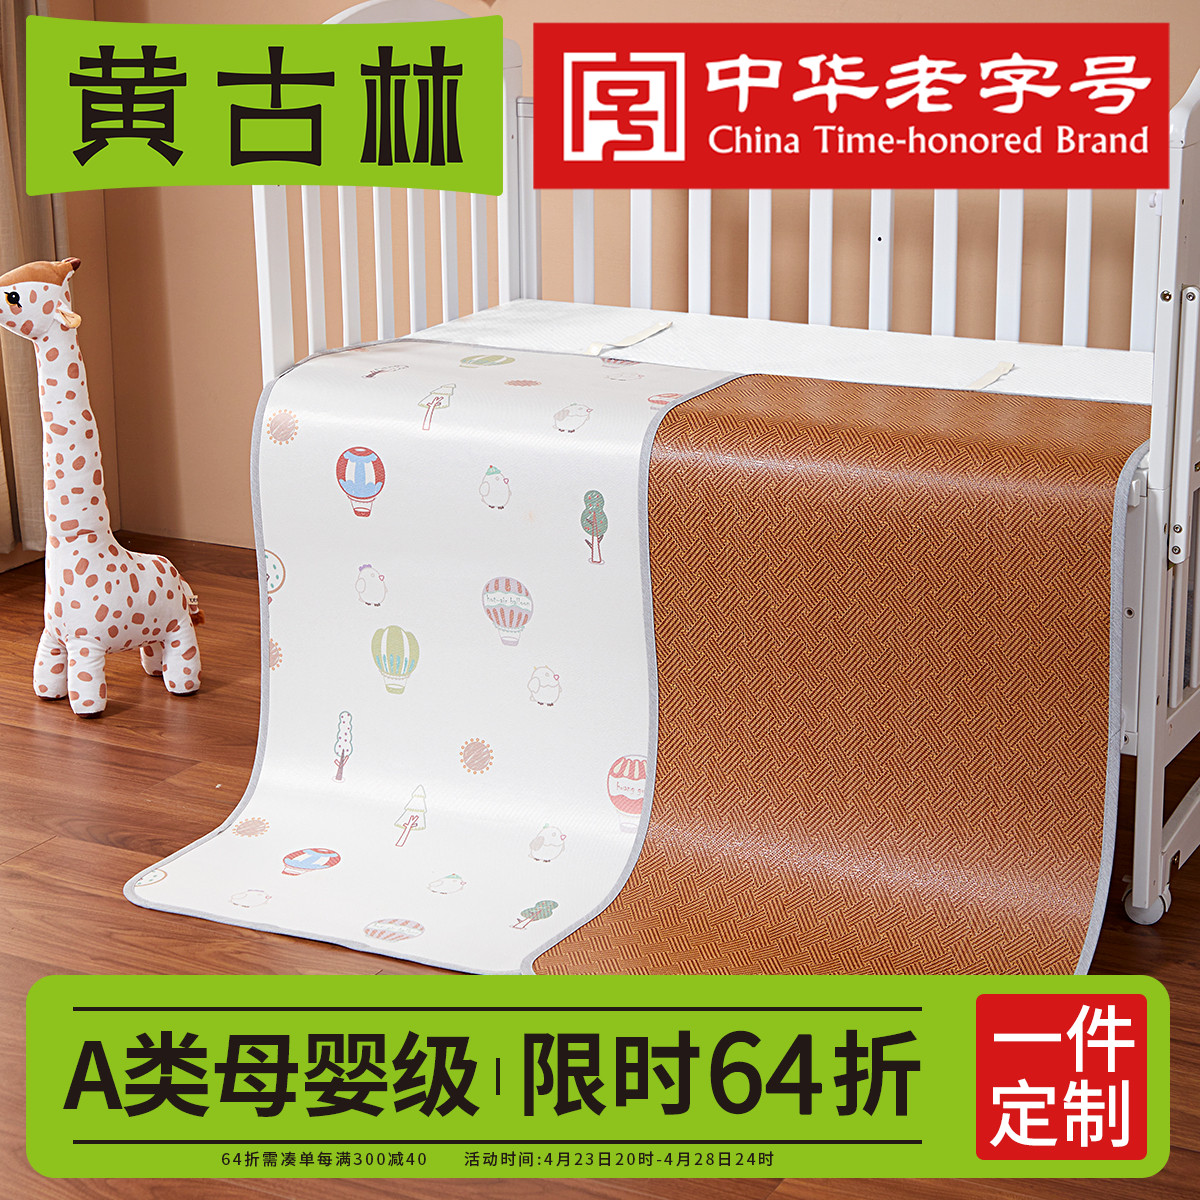 黄古林婴儿凉席双面可用藤席冰丝宝宝幼儿园儿童婴儿床专用席子